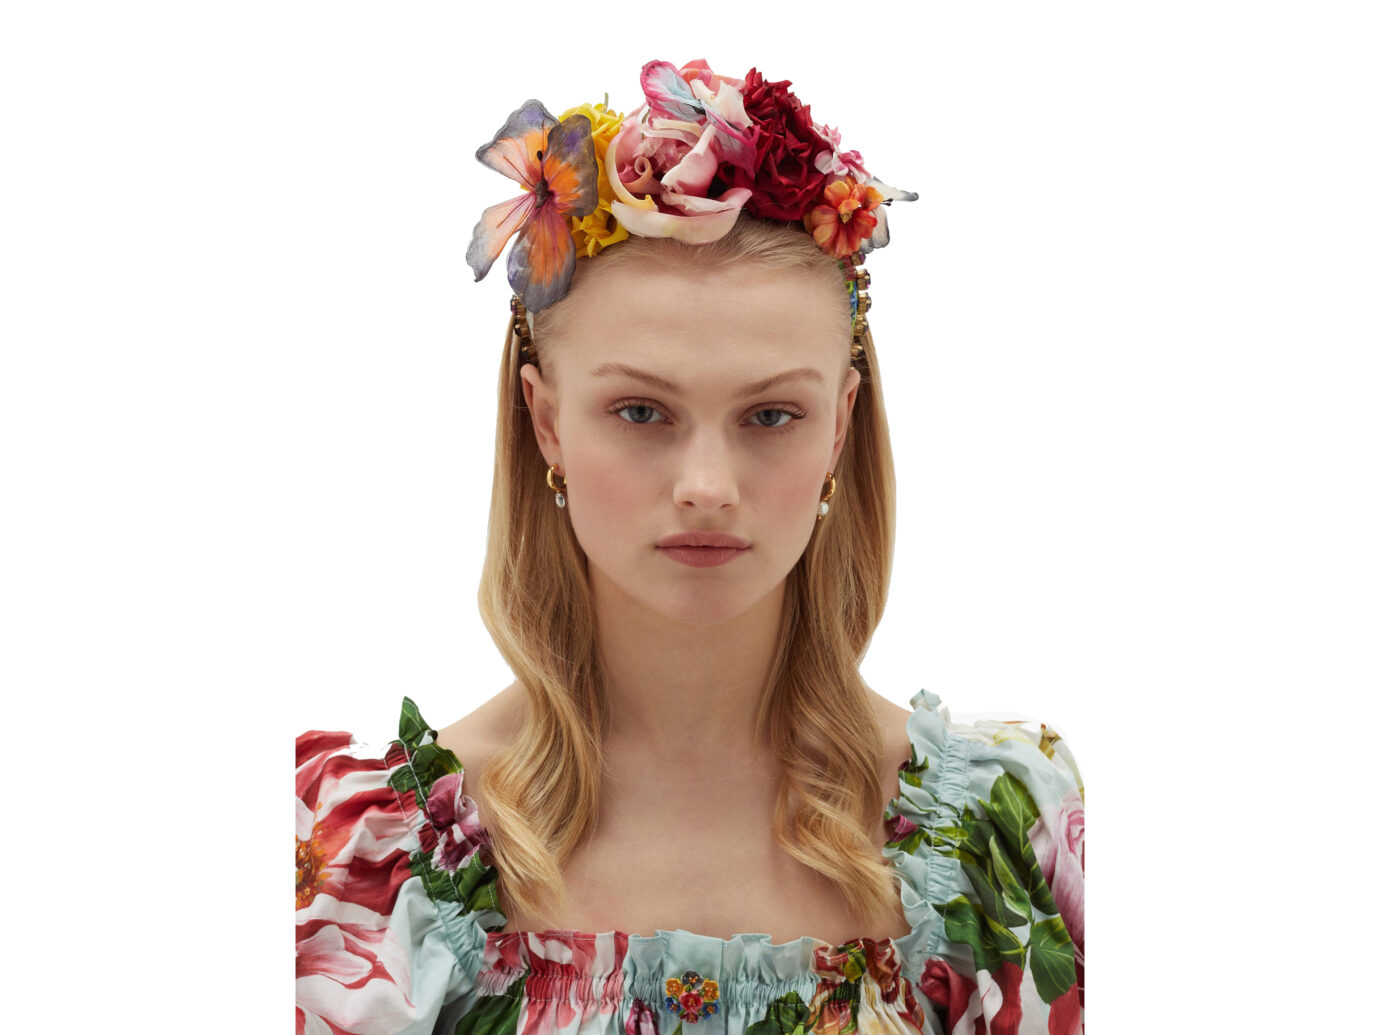 LCE & GABBANA Domenico Dolce & Gabbana Flower and crystal-embellished silk headband